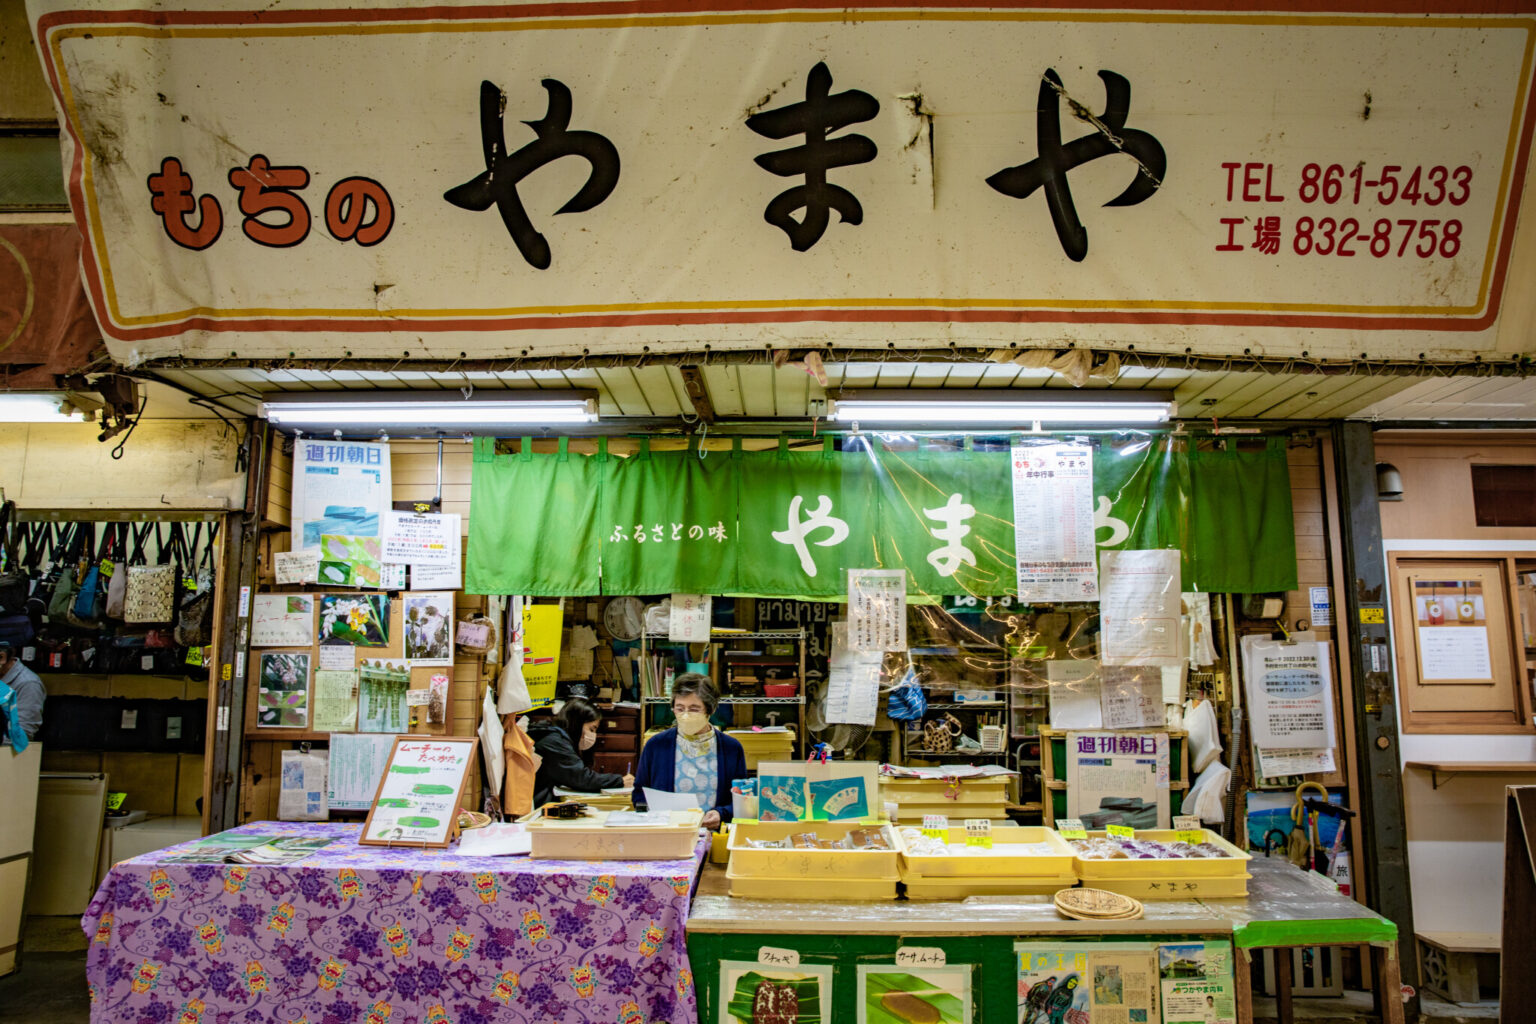 地域の元気の源、沖縄伝統の餅菓子などを販売する。